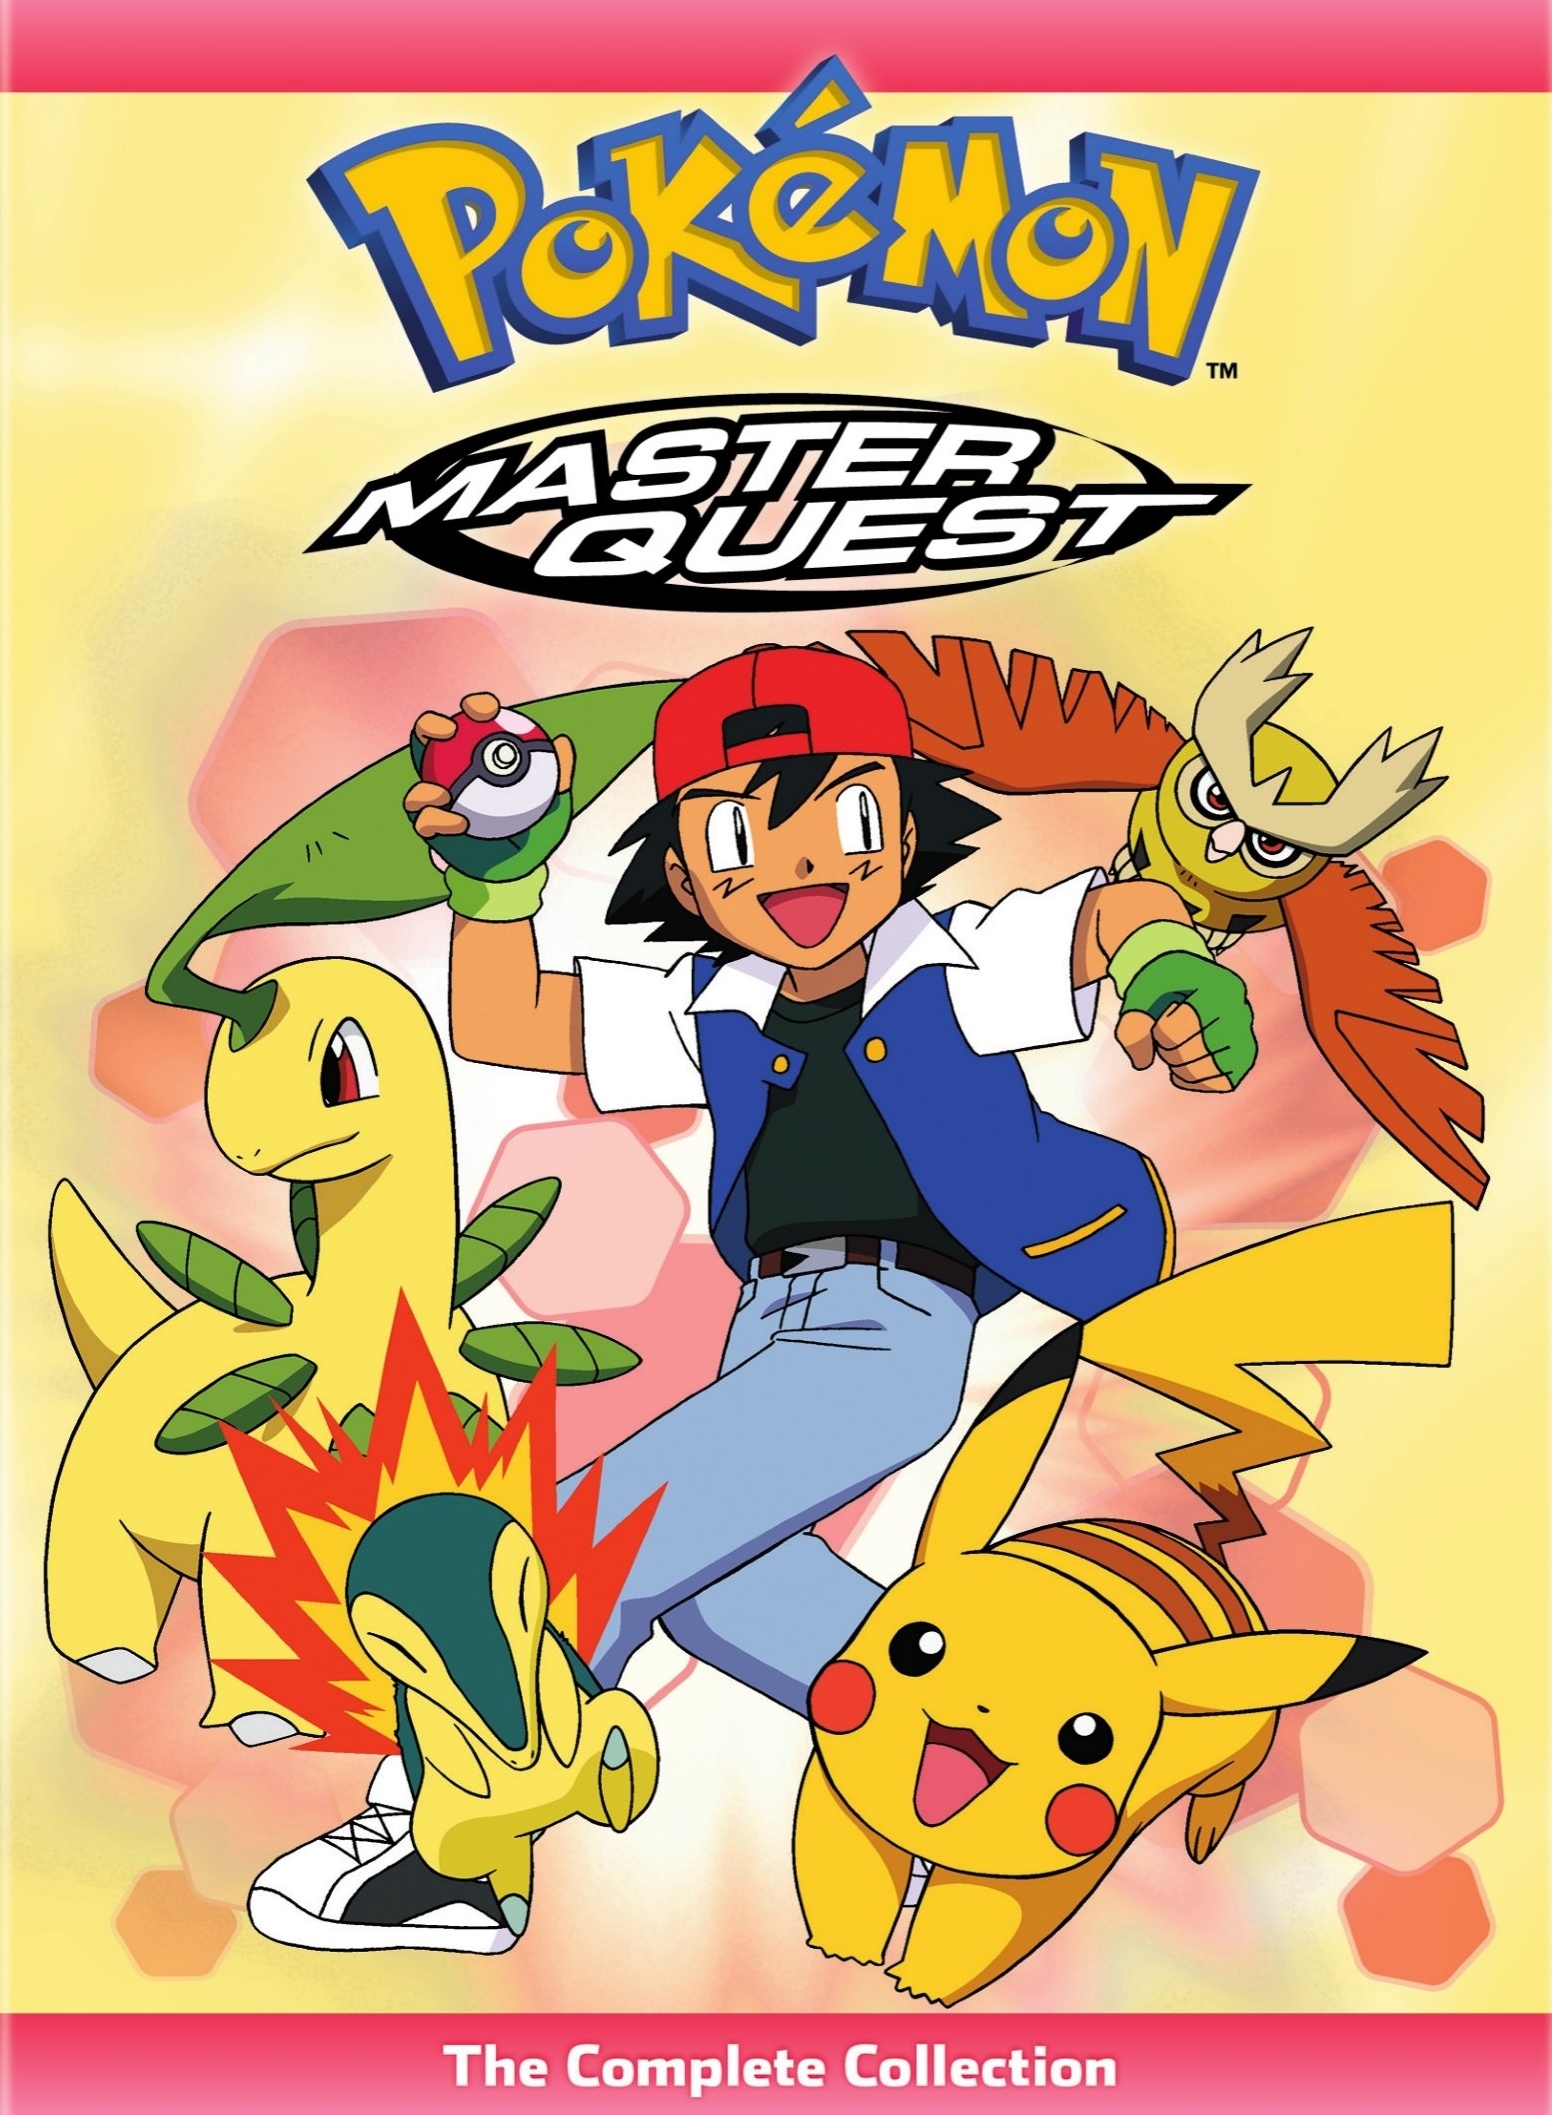 Top Pokémon Quest Clips